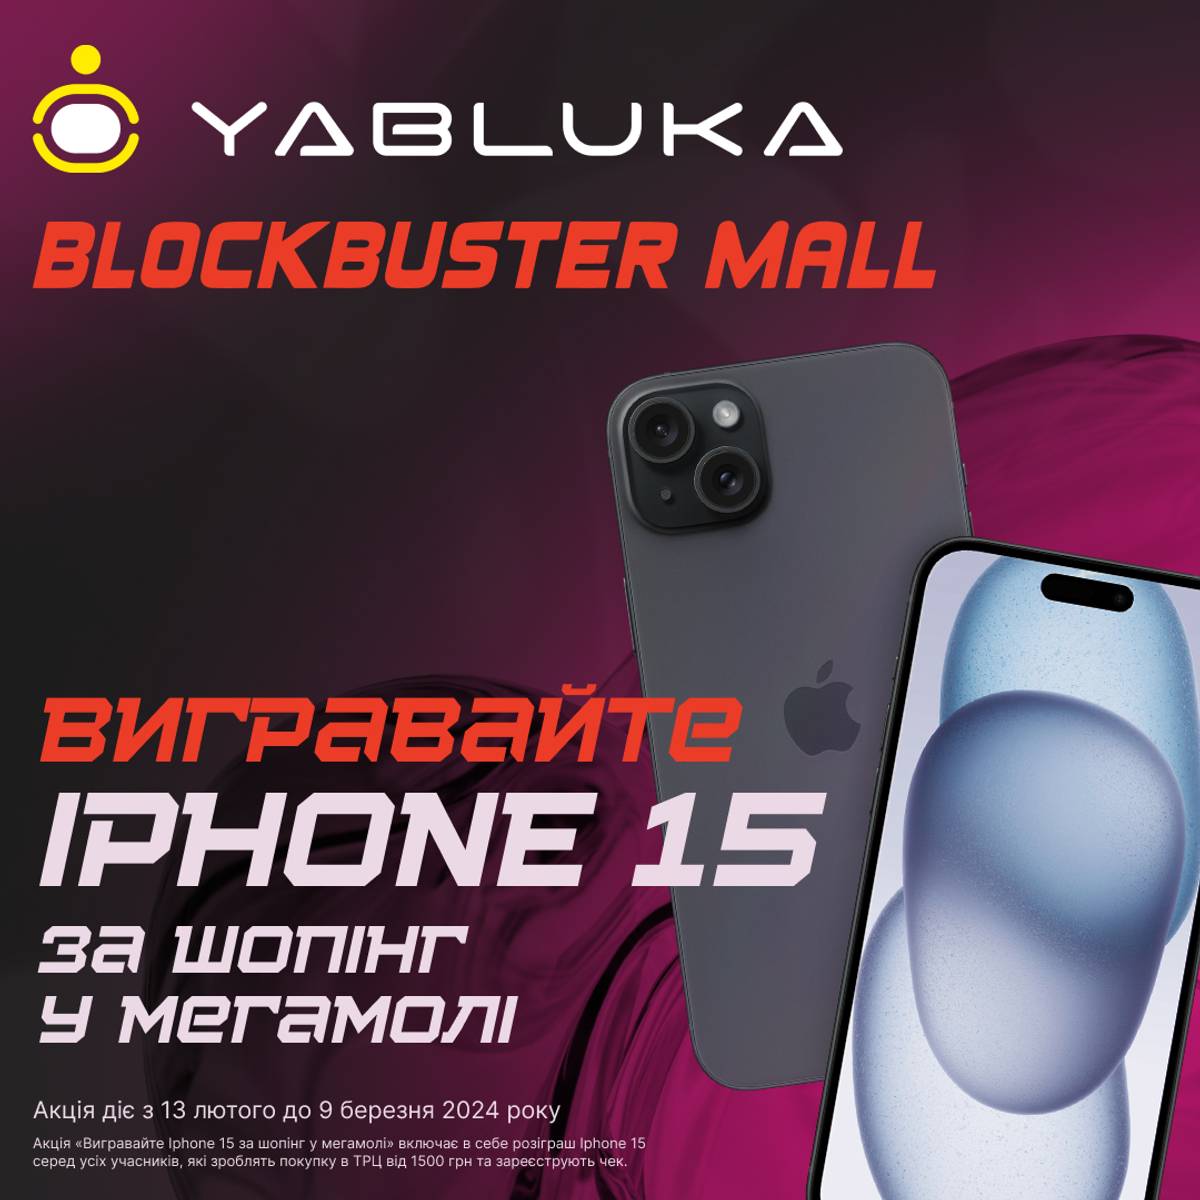 Шоппинг в Blockbuster Mall приносит новенький iPhone